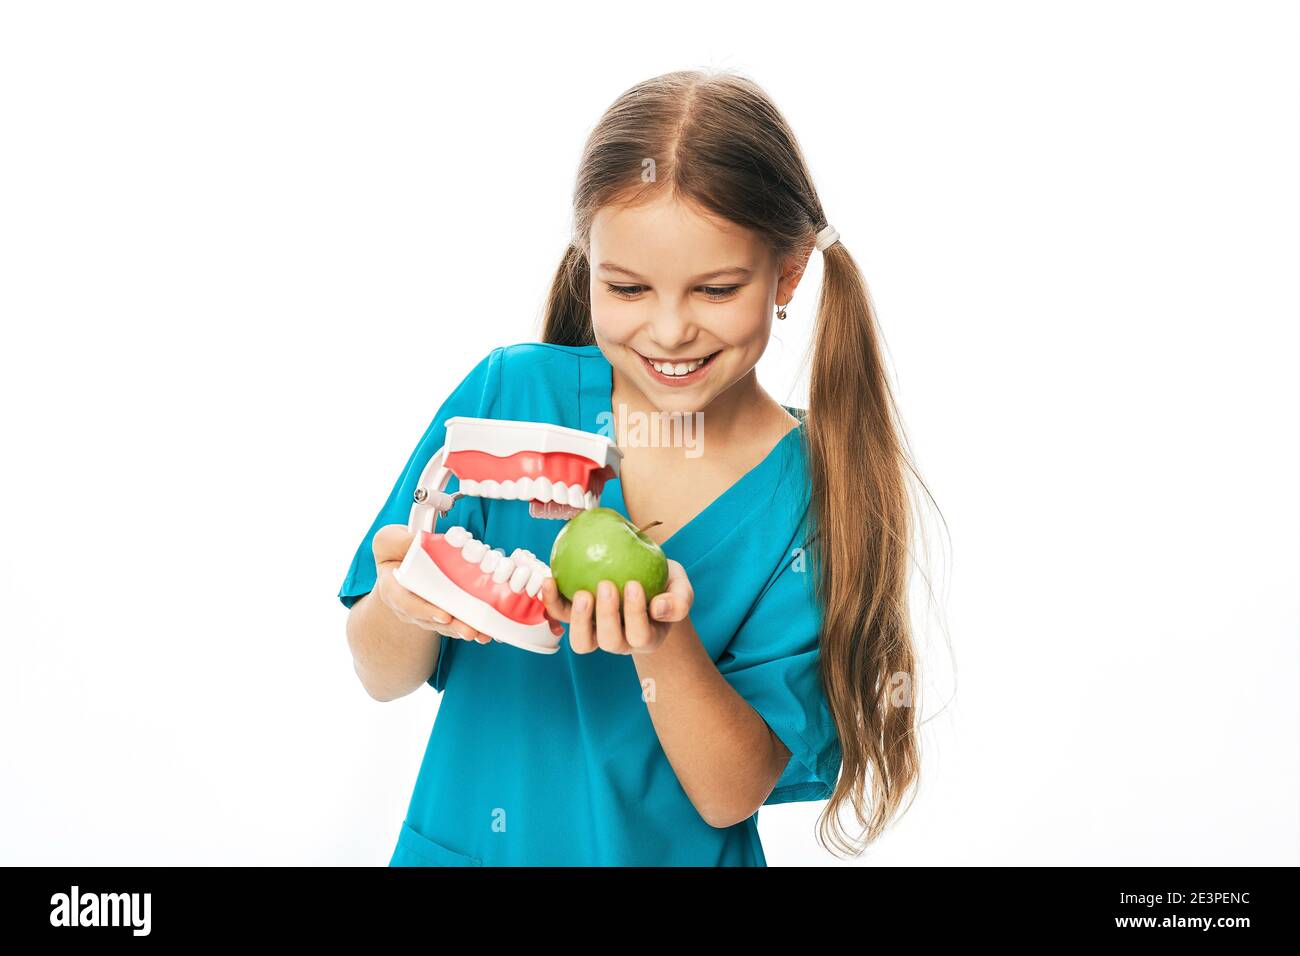 Enfant avec un sourire crasseux, tenant un modèle anatomique de mâchoire et de pomme dans ses mains. Concept de l'effet de la nourriture sur les dents des enfants Banque D'Images